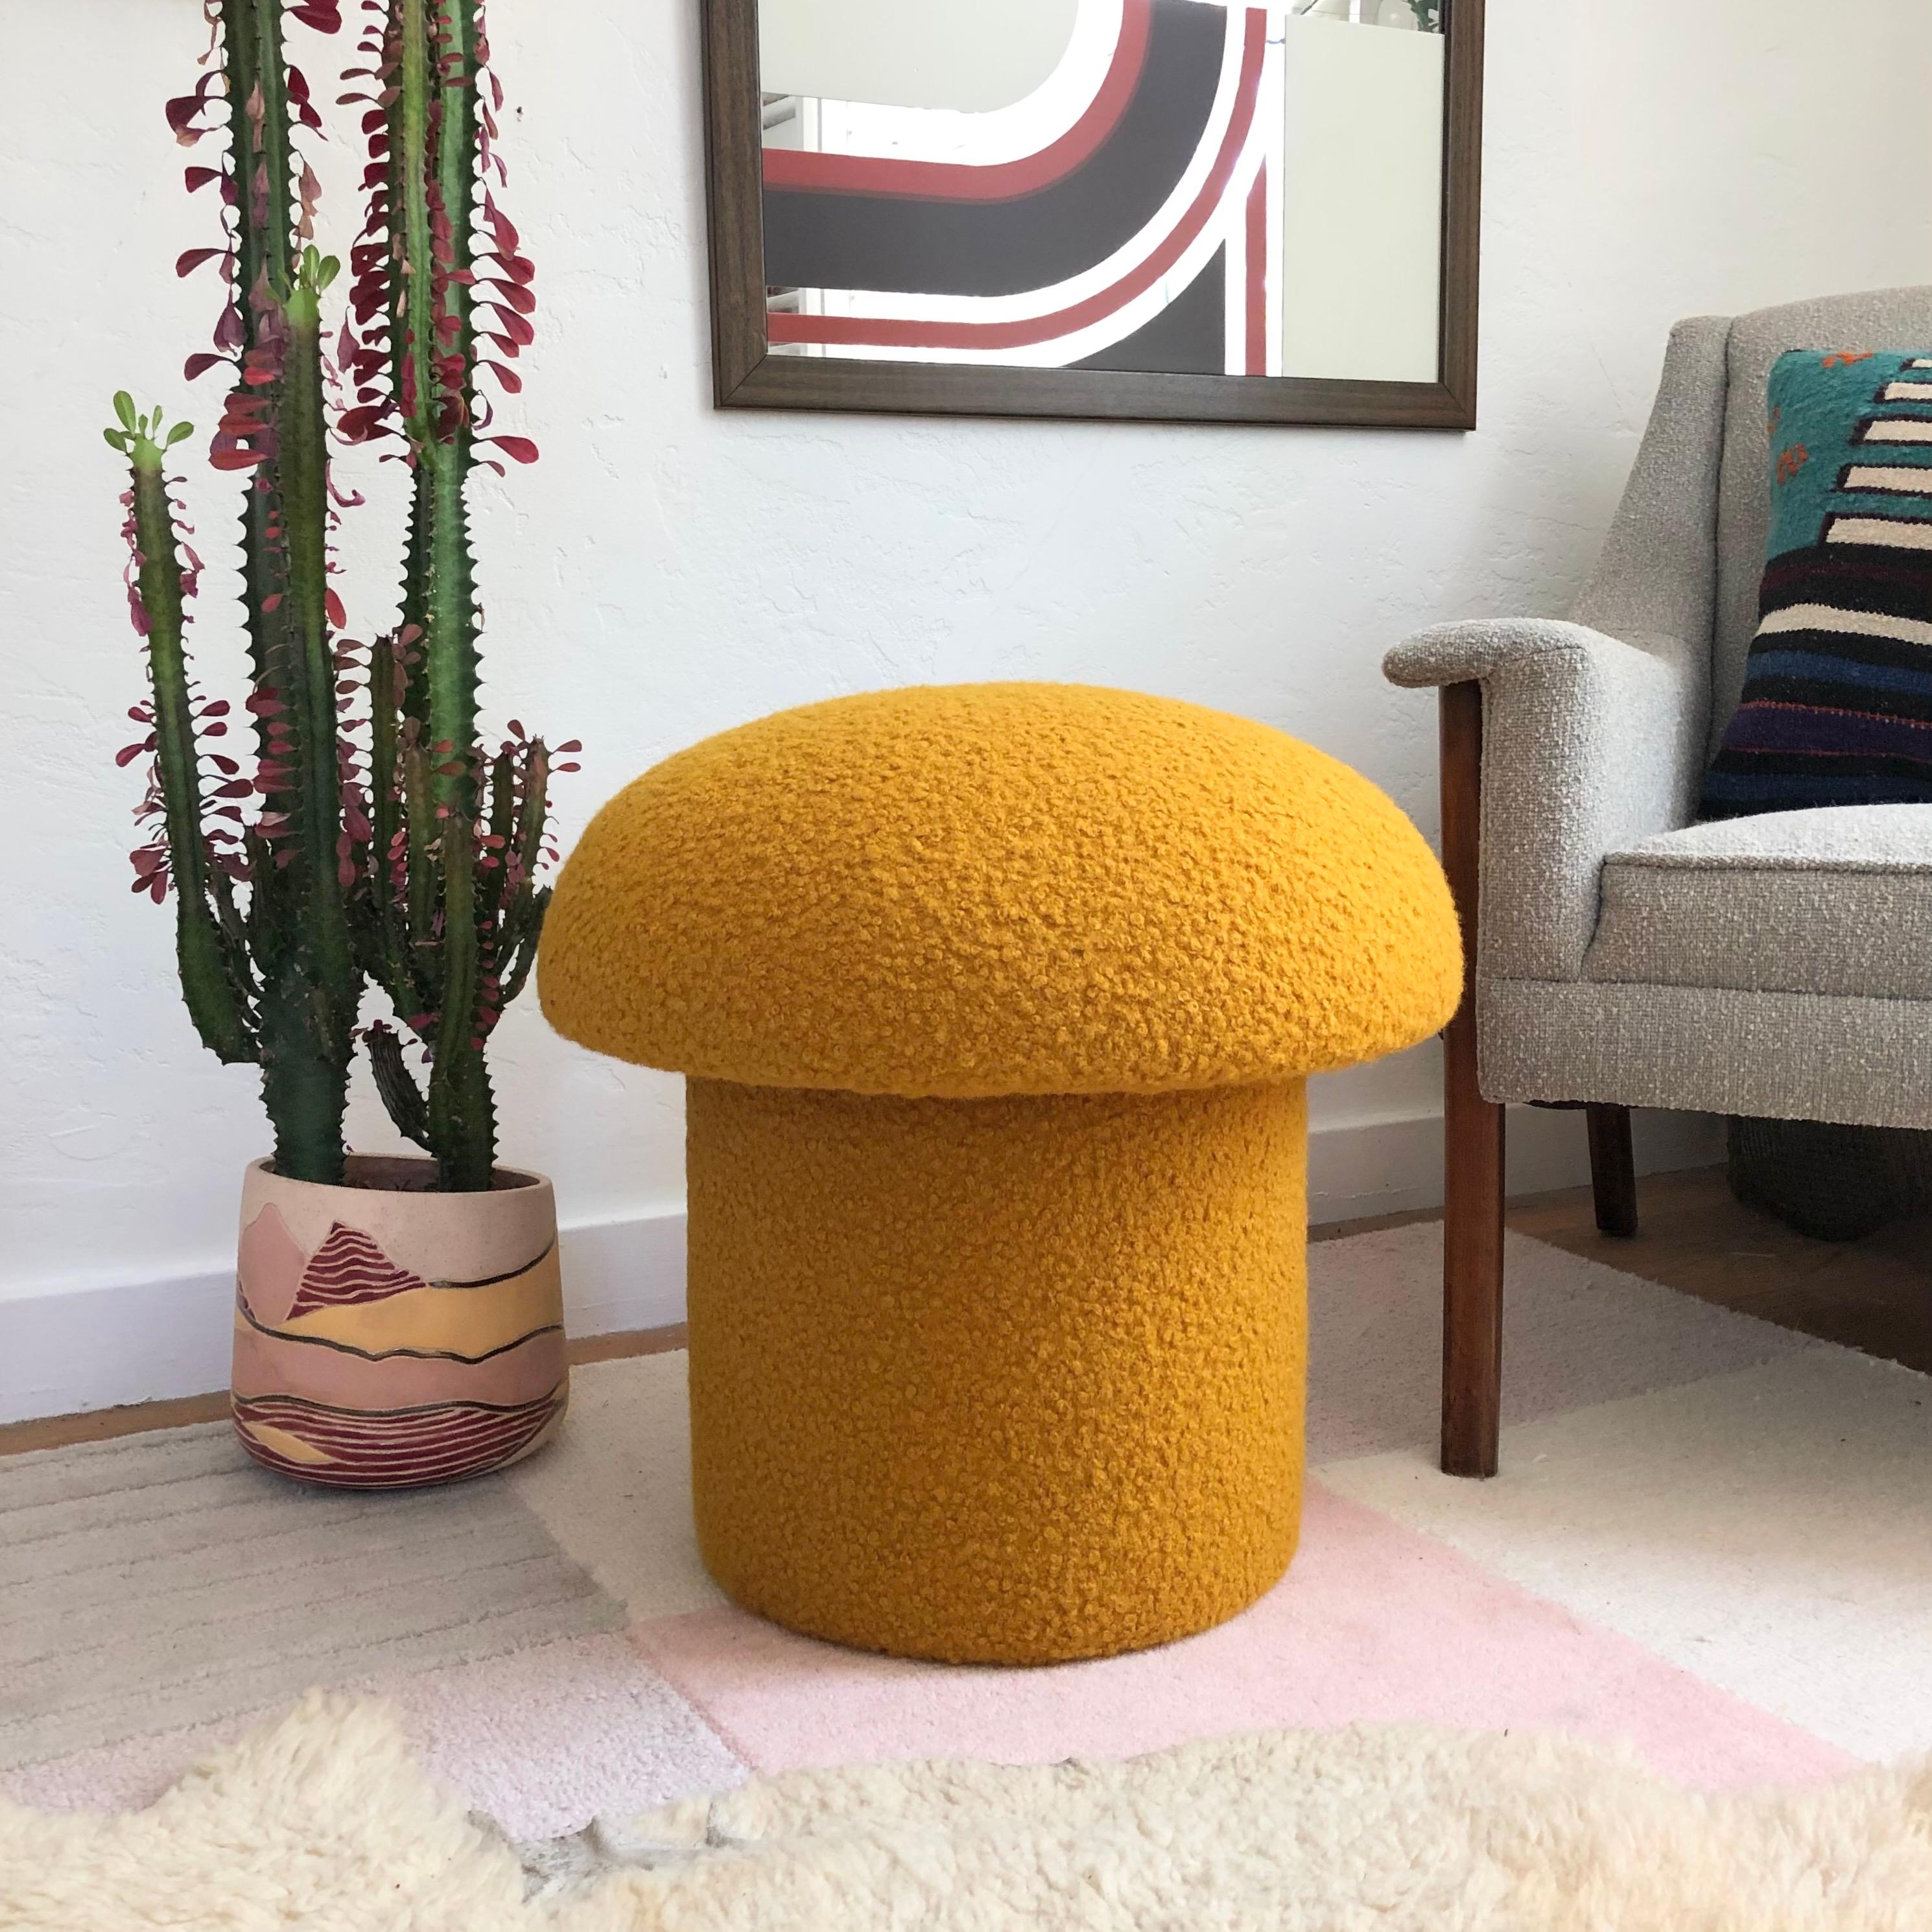 Un ottoman fait main en forme de champignon, tapissé d'un tissu bouclé de couleur jaune moutarde. Parfait pour être utilisé comme pouf ou comme siège supplémentaire d'appoint. Un siège coussiné confortable et une pièce d'accentuation